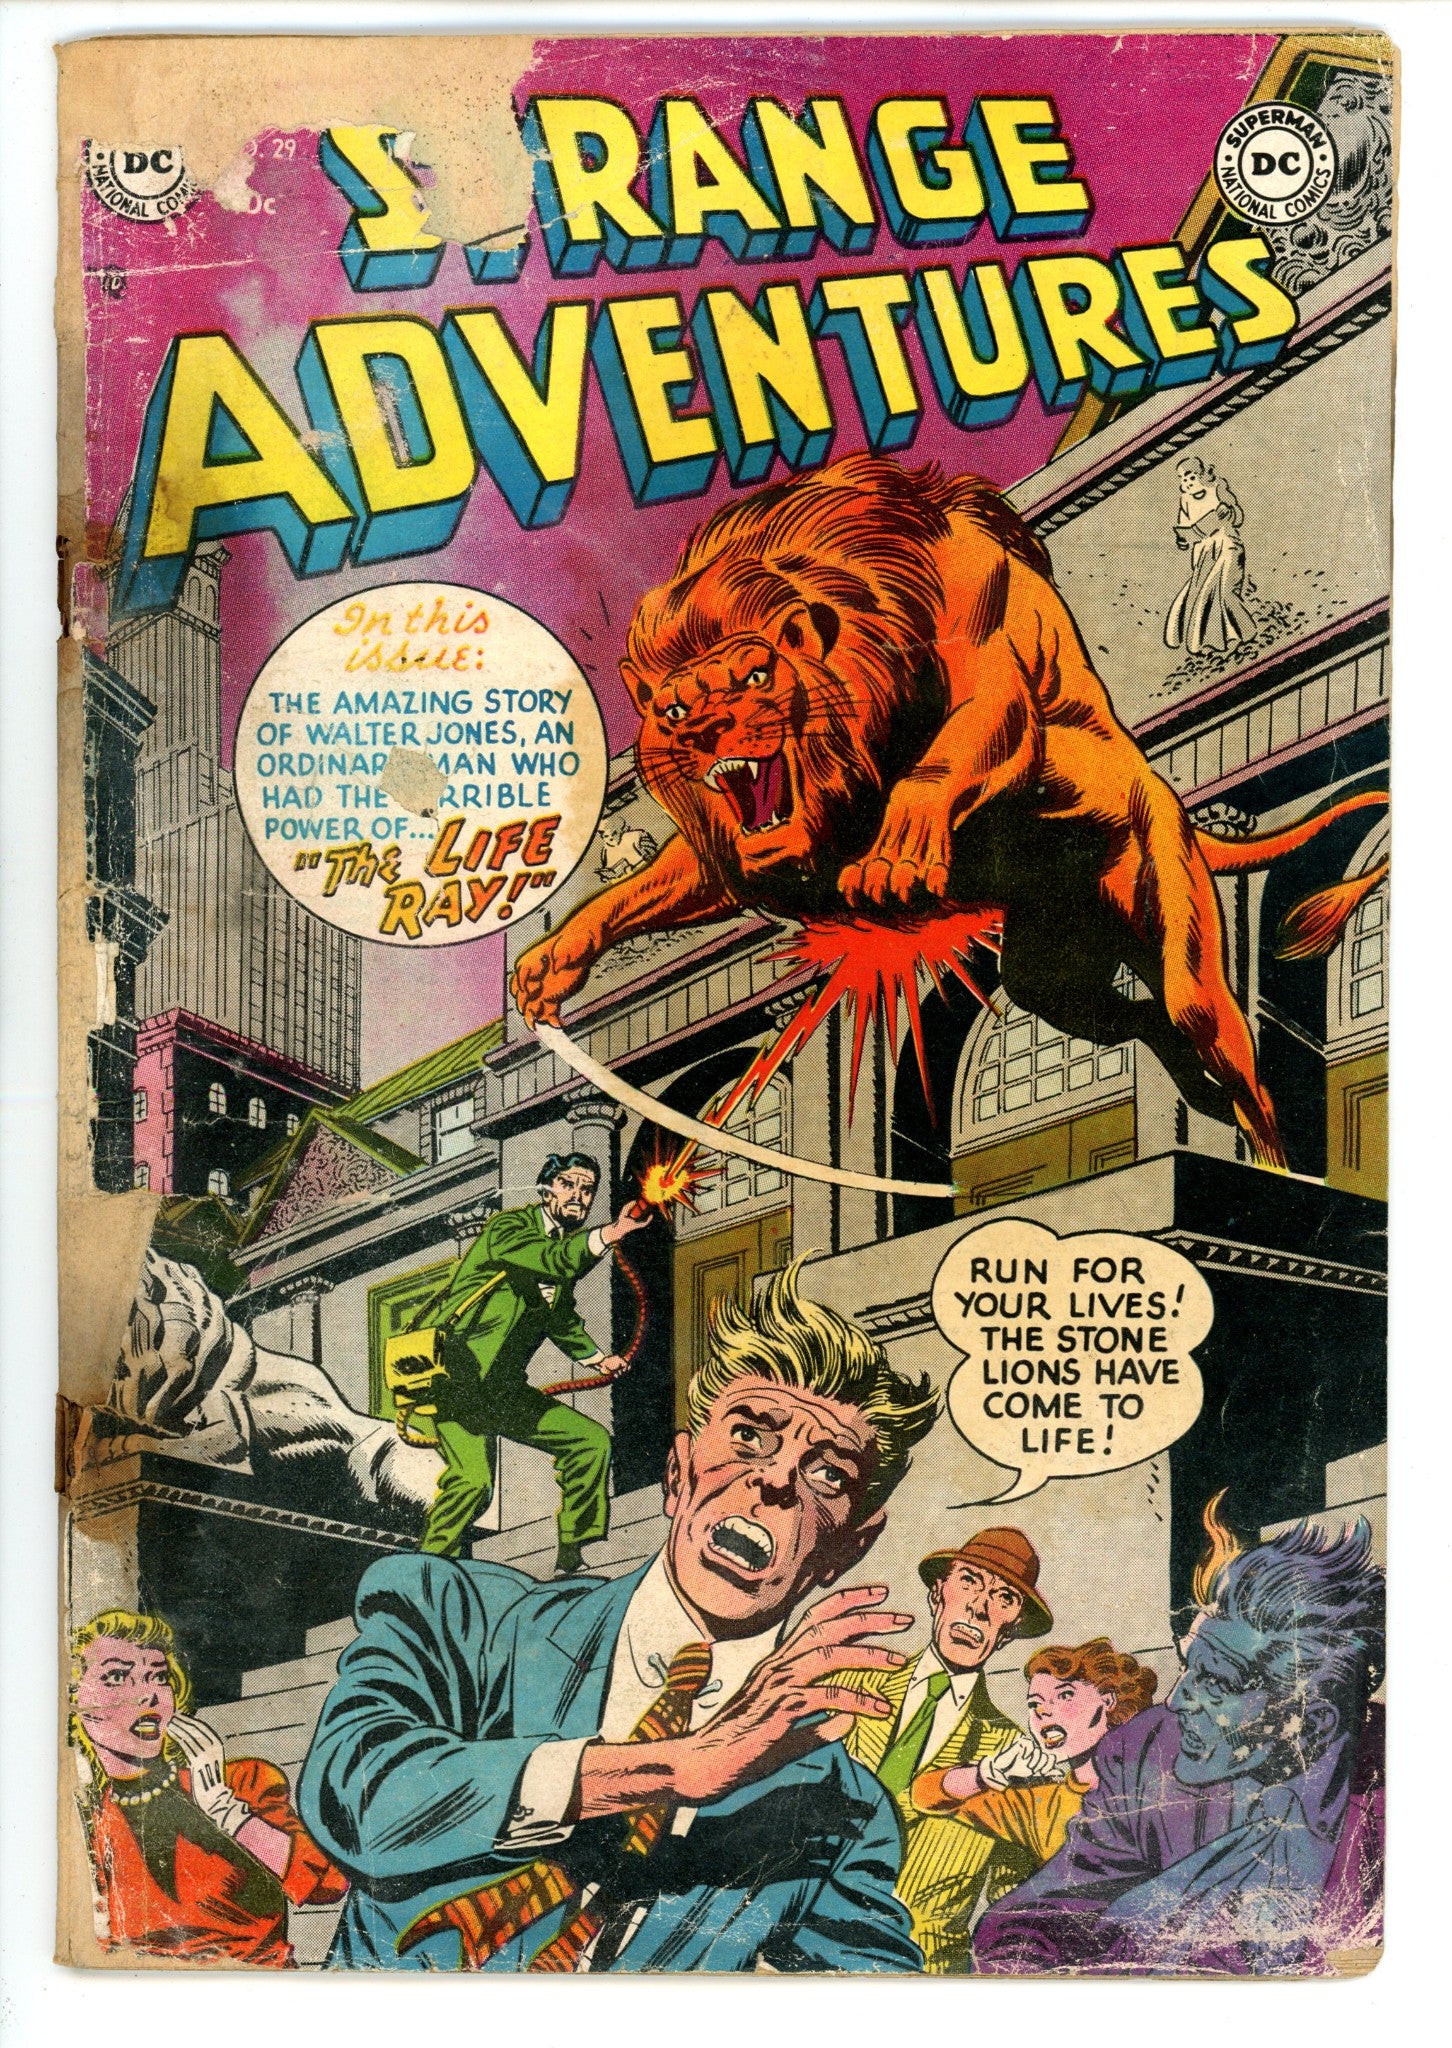 Strange Adventures Vol 1 29 Back Cover Missing (1953) 